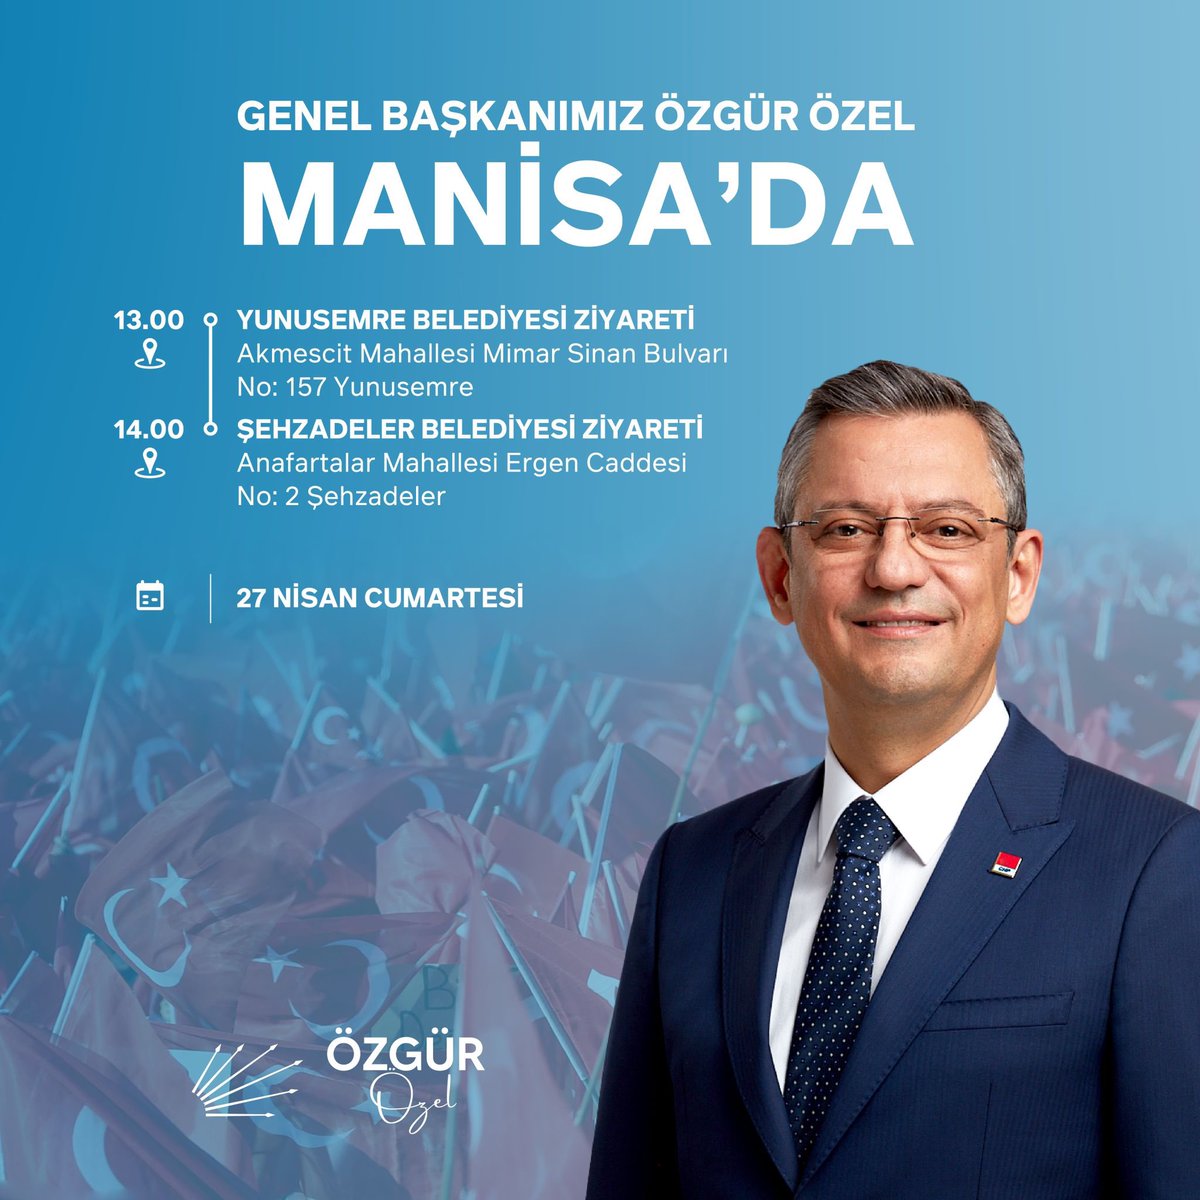 Genel Başkanımız Sayın Özgür Özel, bugün Manisa’da olacak. 🗓️27 Nisan Cumartesi